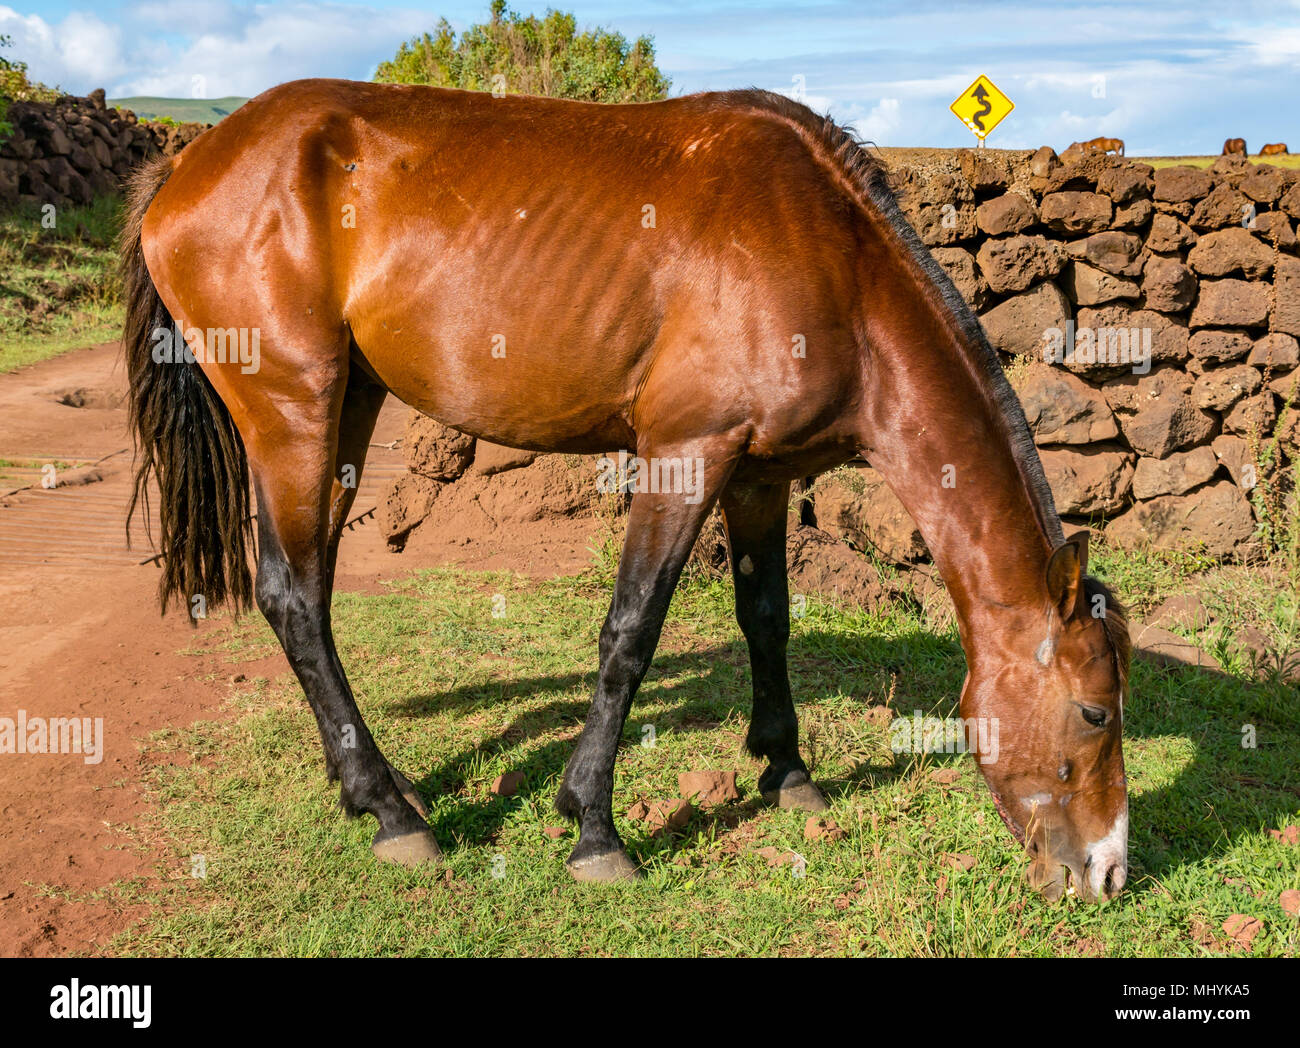 Wild Horse di pascolare su erba accanto al mare, con cielo blu, l'isola di pasqua, Cile Foto Stock